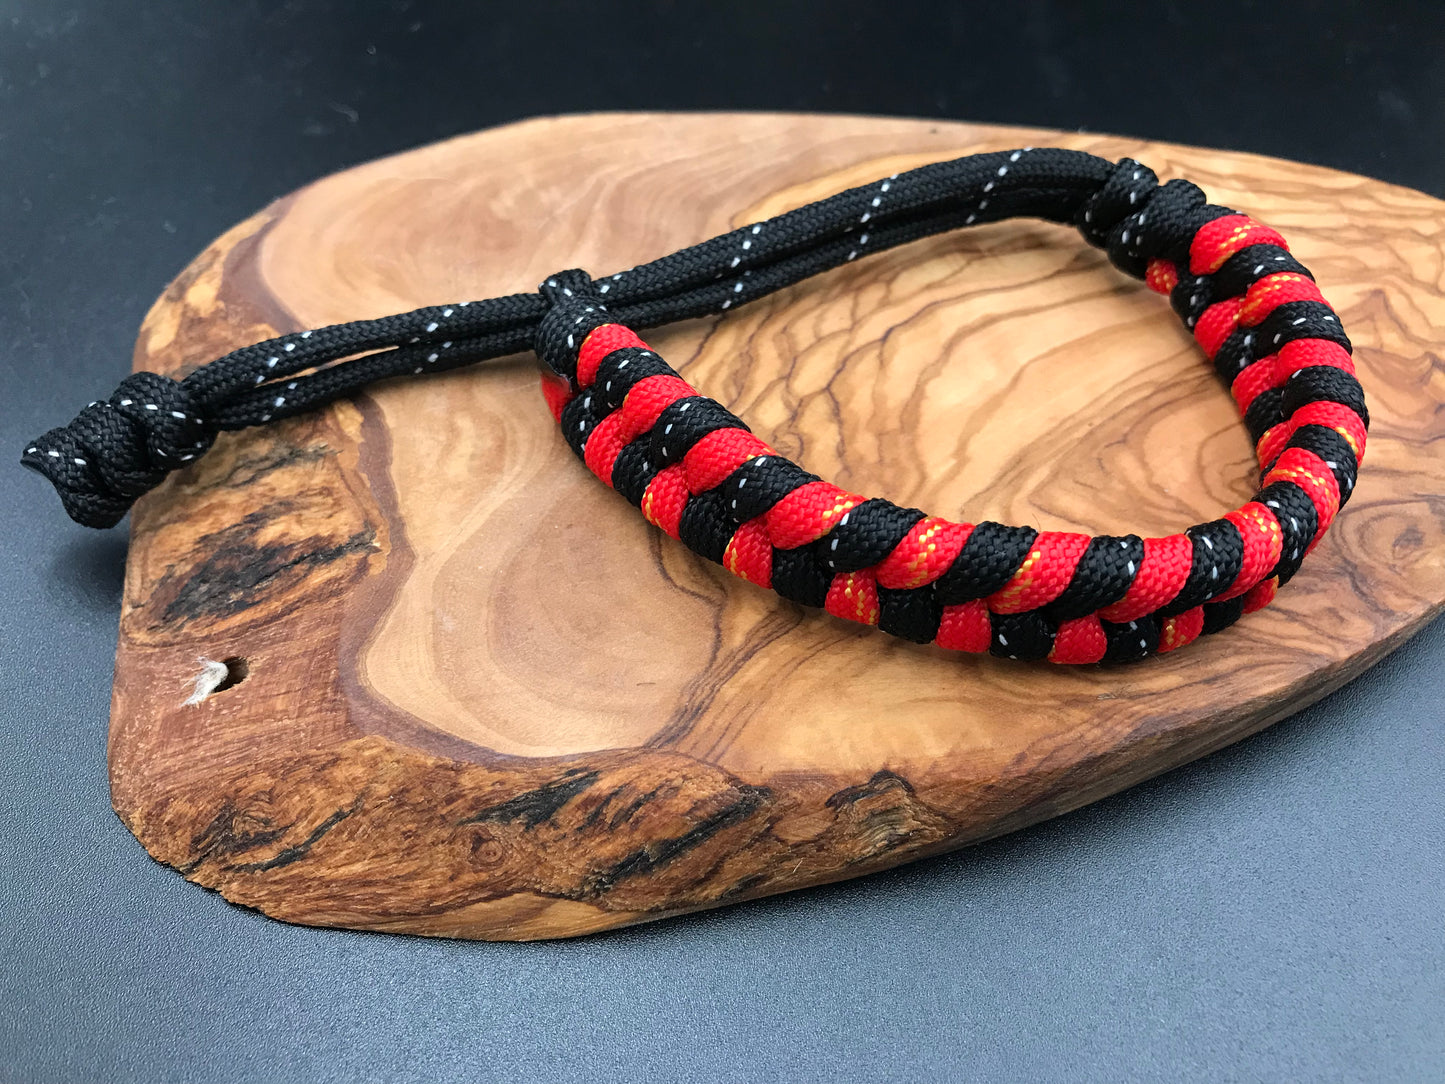 Paracord survival bracelets fishtail design